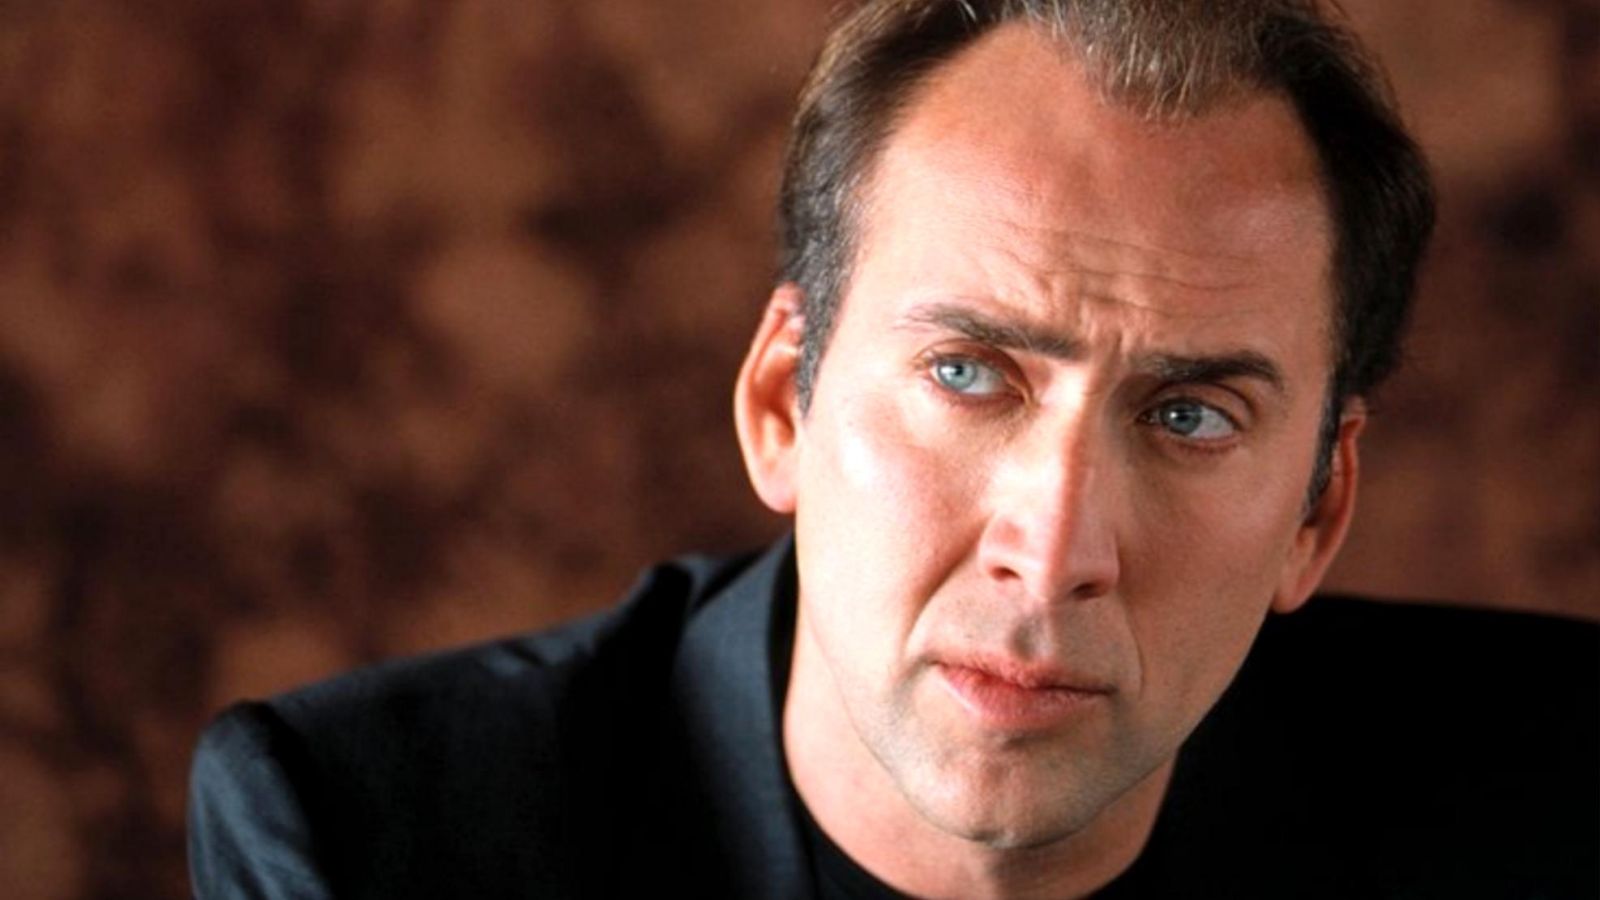 Nicolas Cage non è solo un meme: una maratona dei suoi film più noti lo dimostra. Scopri dove vederla gratis